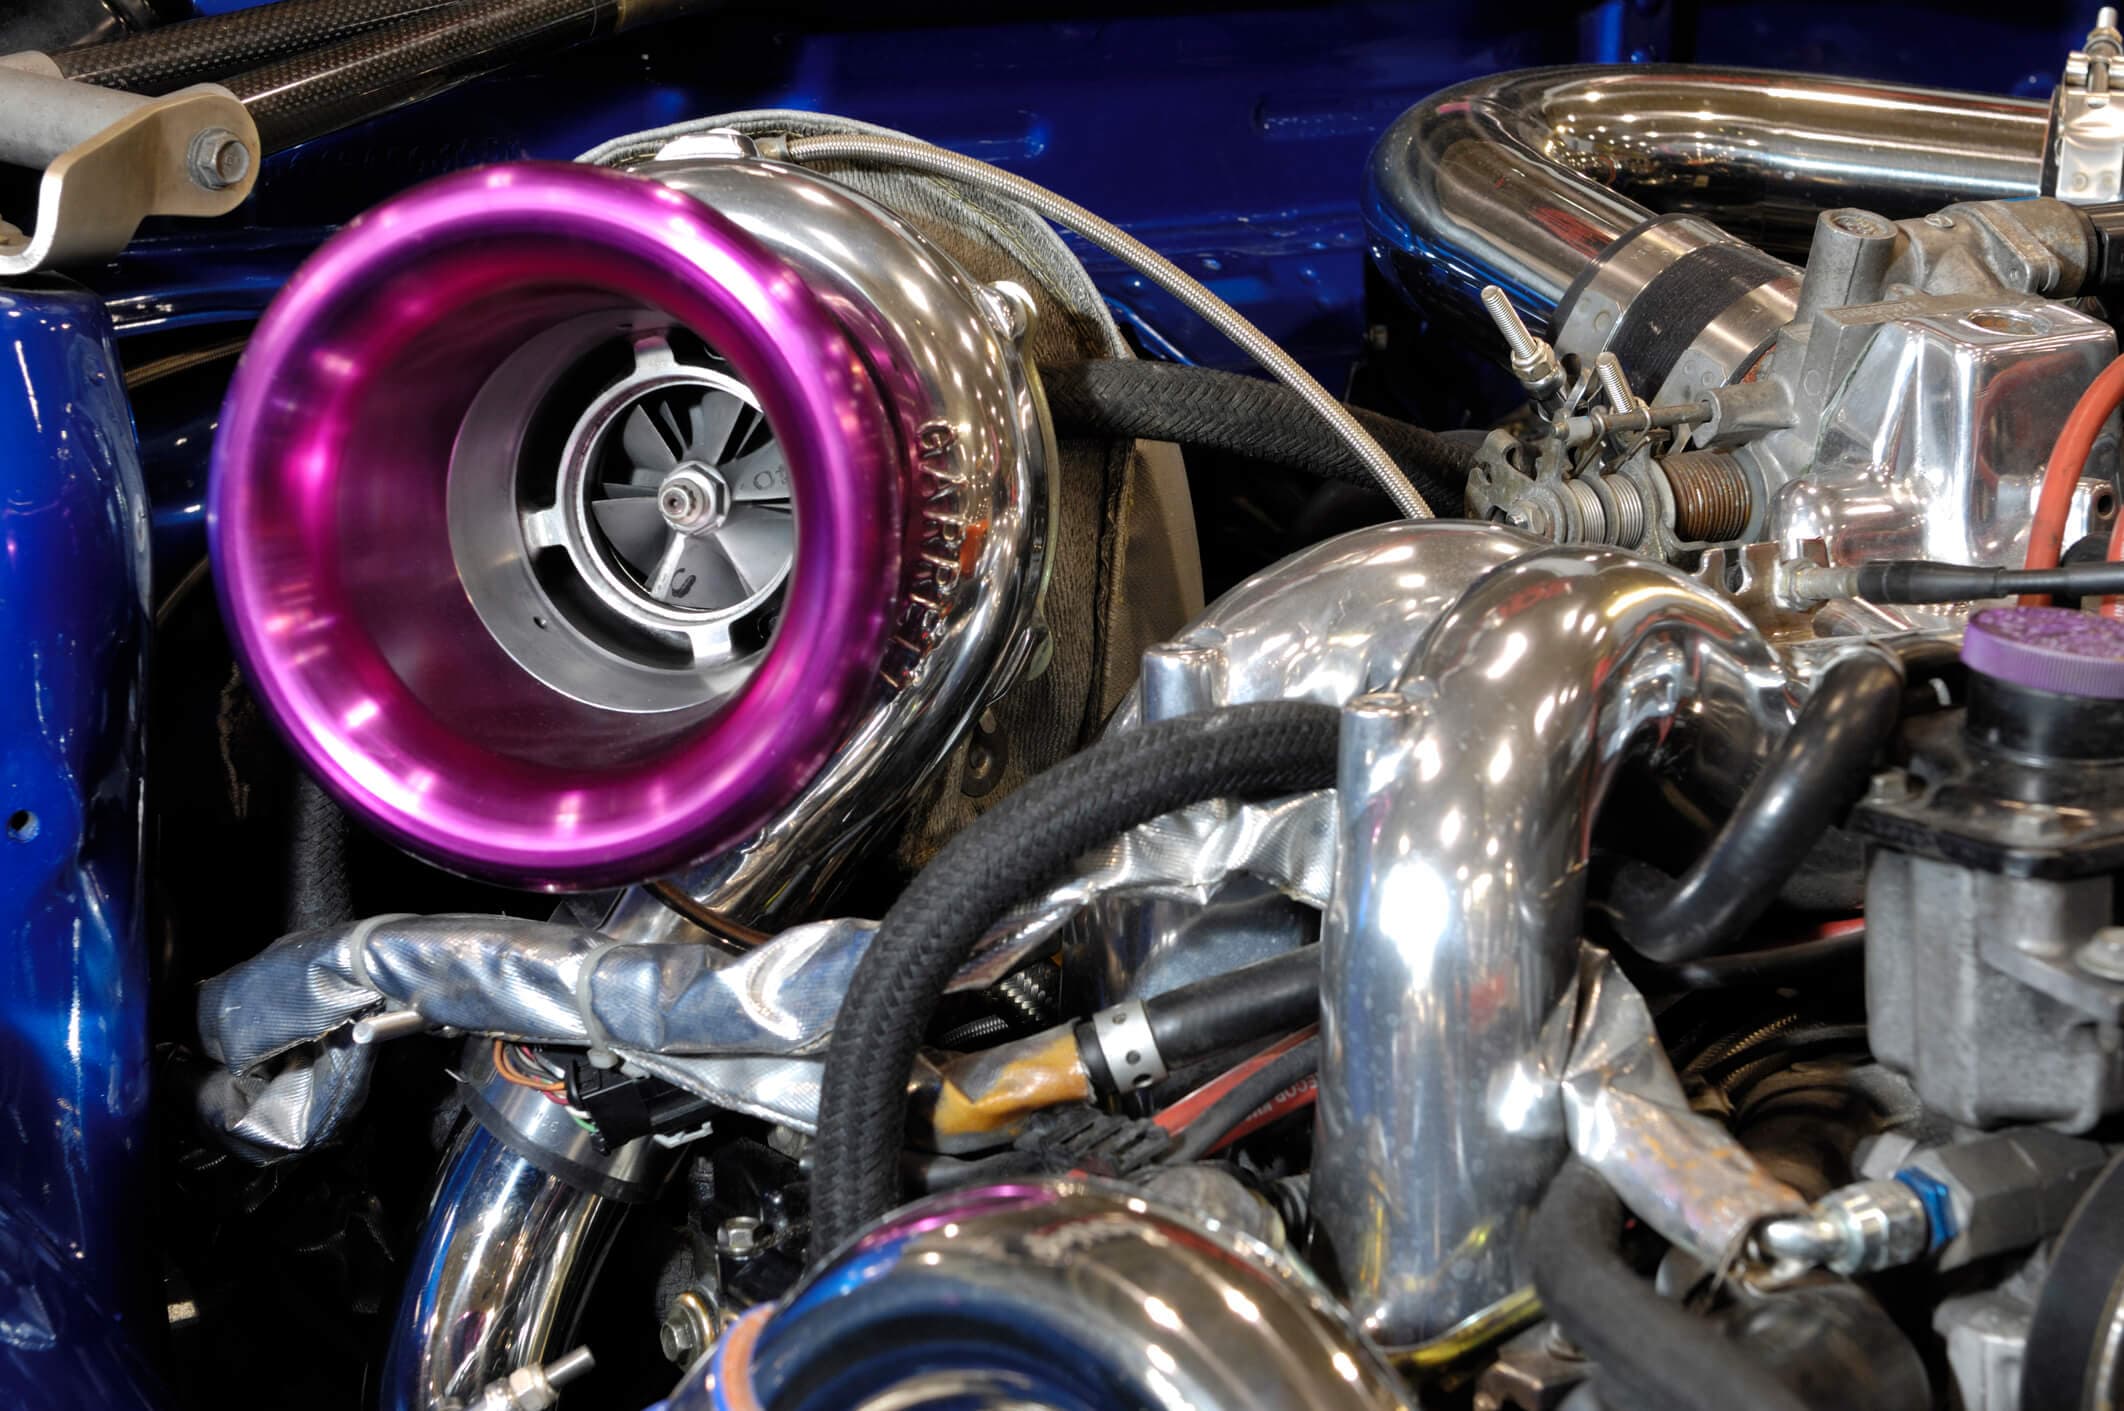 Best 110v Air Compressors: Our Top Picks for Your Car, Workshop & Garage